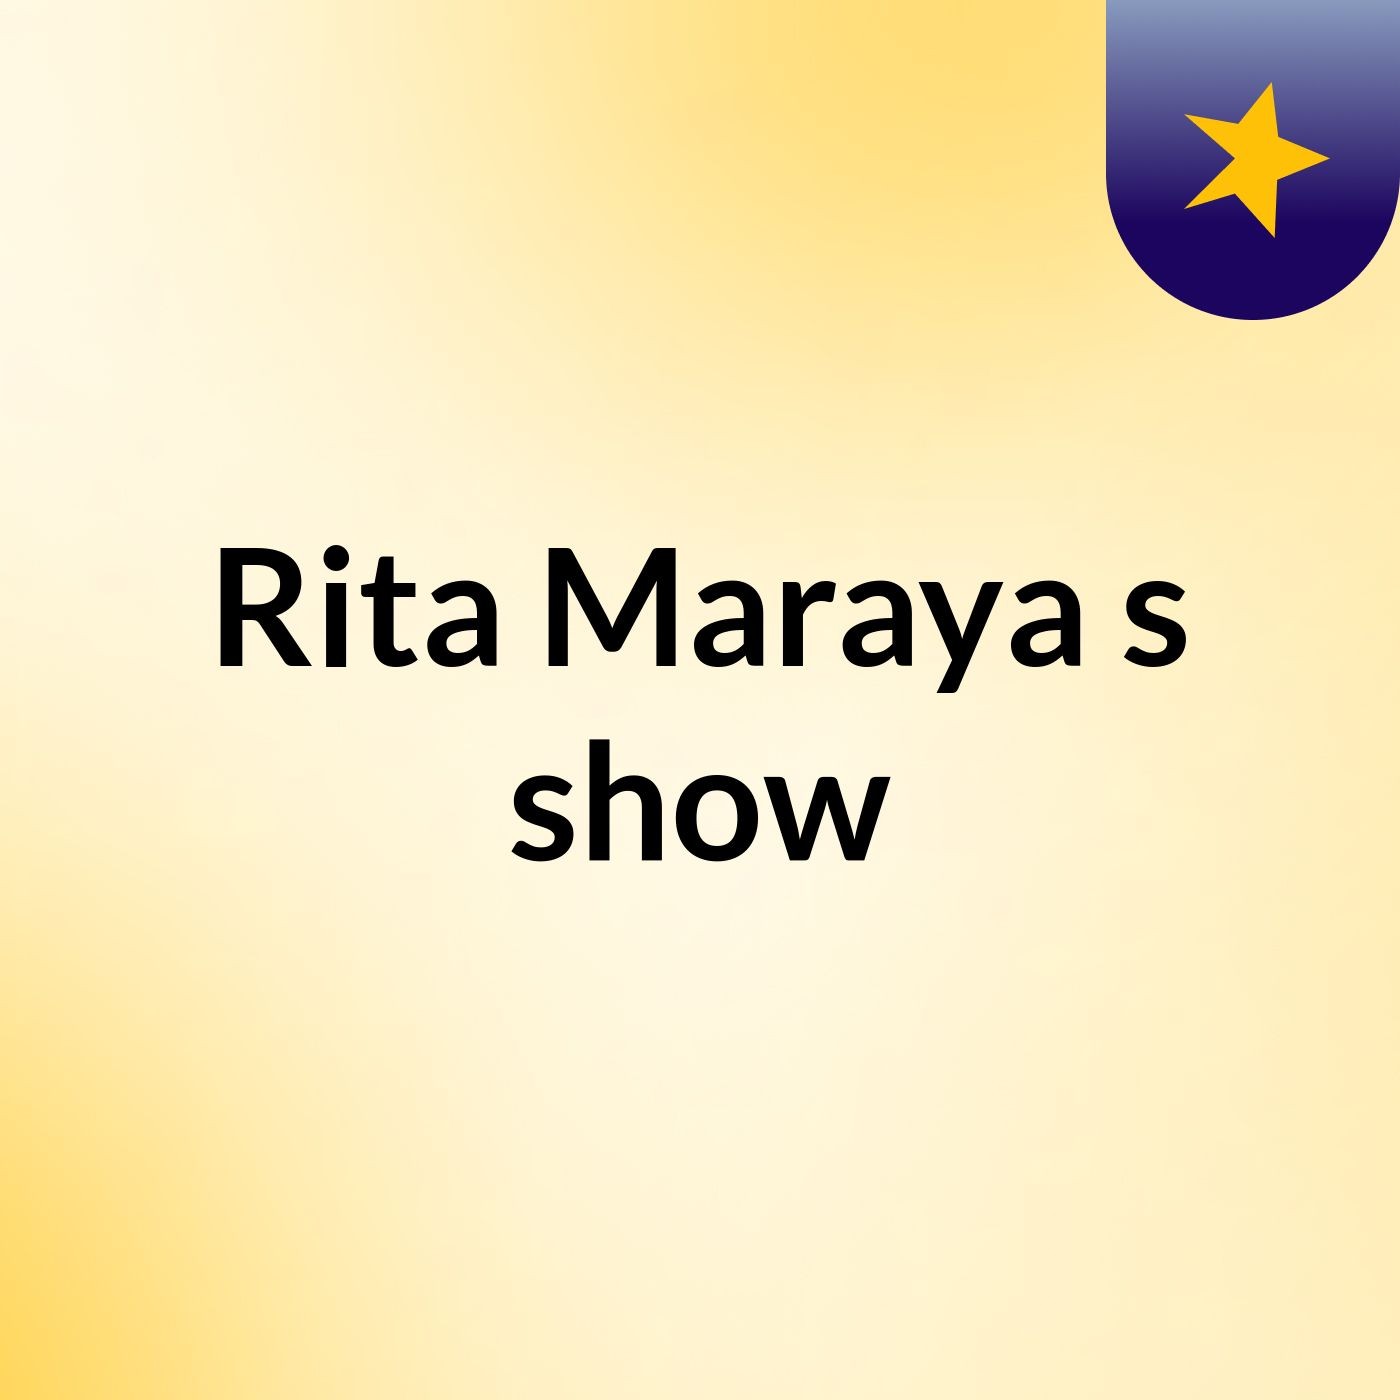 Rita Maraya's show